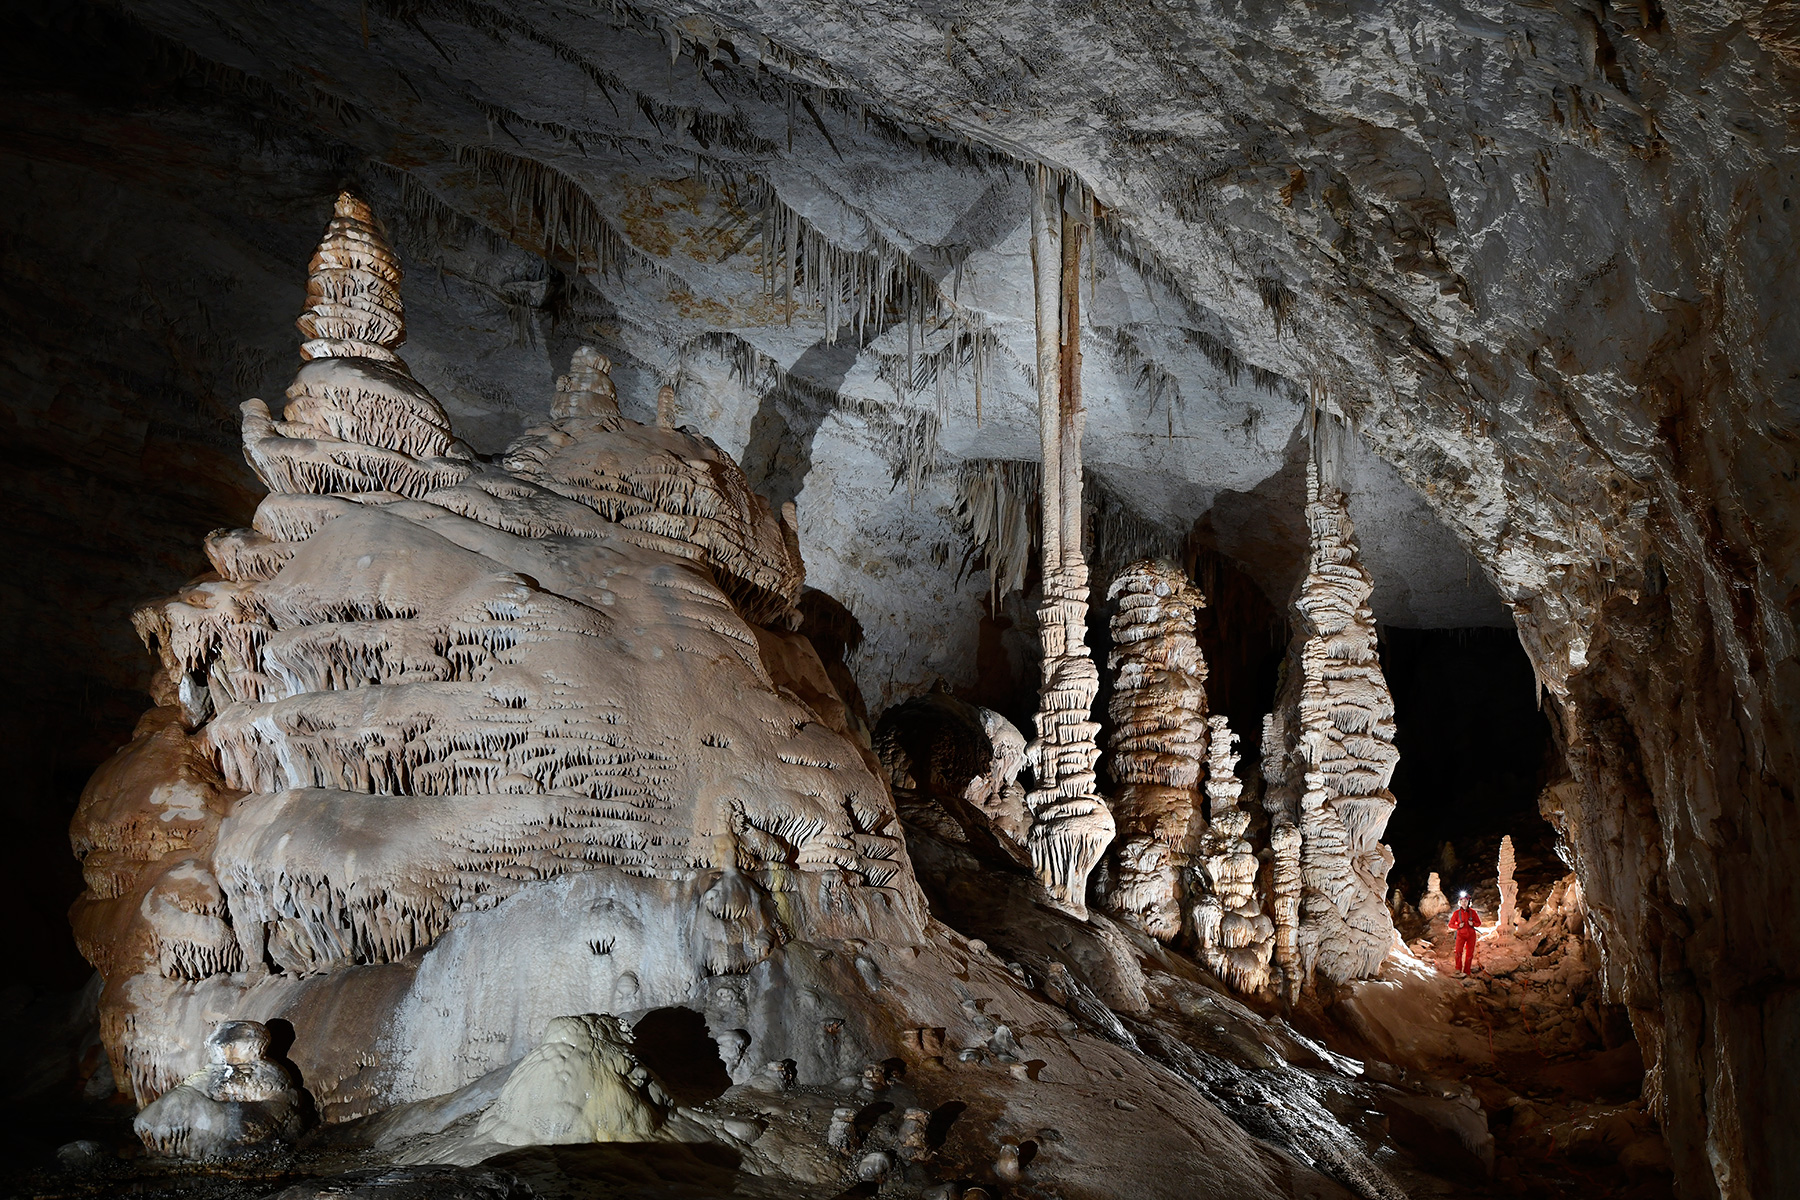 Cottonwood Cave (USA - Nouveau Mexique) - Galerie principale avec groupe de colonnes et stalagmites massives ("Main passage")